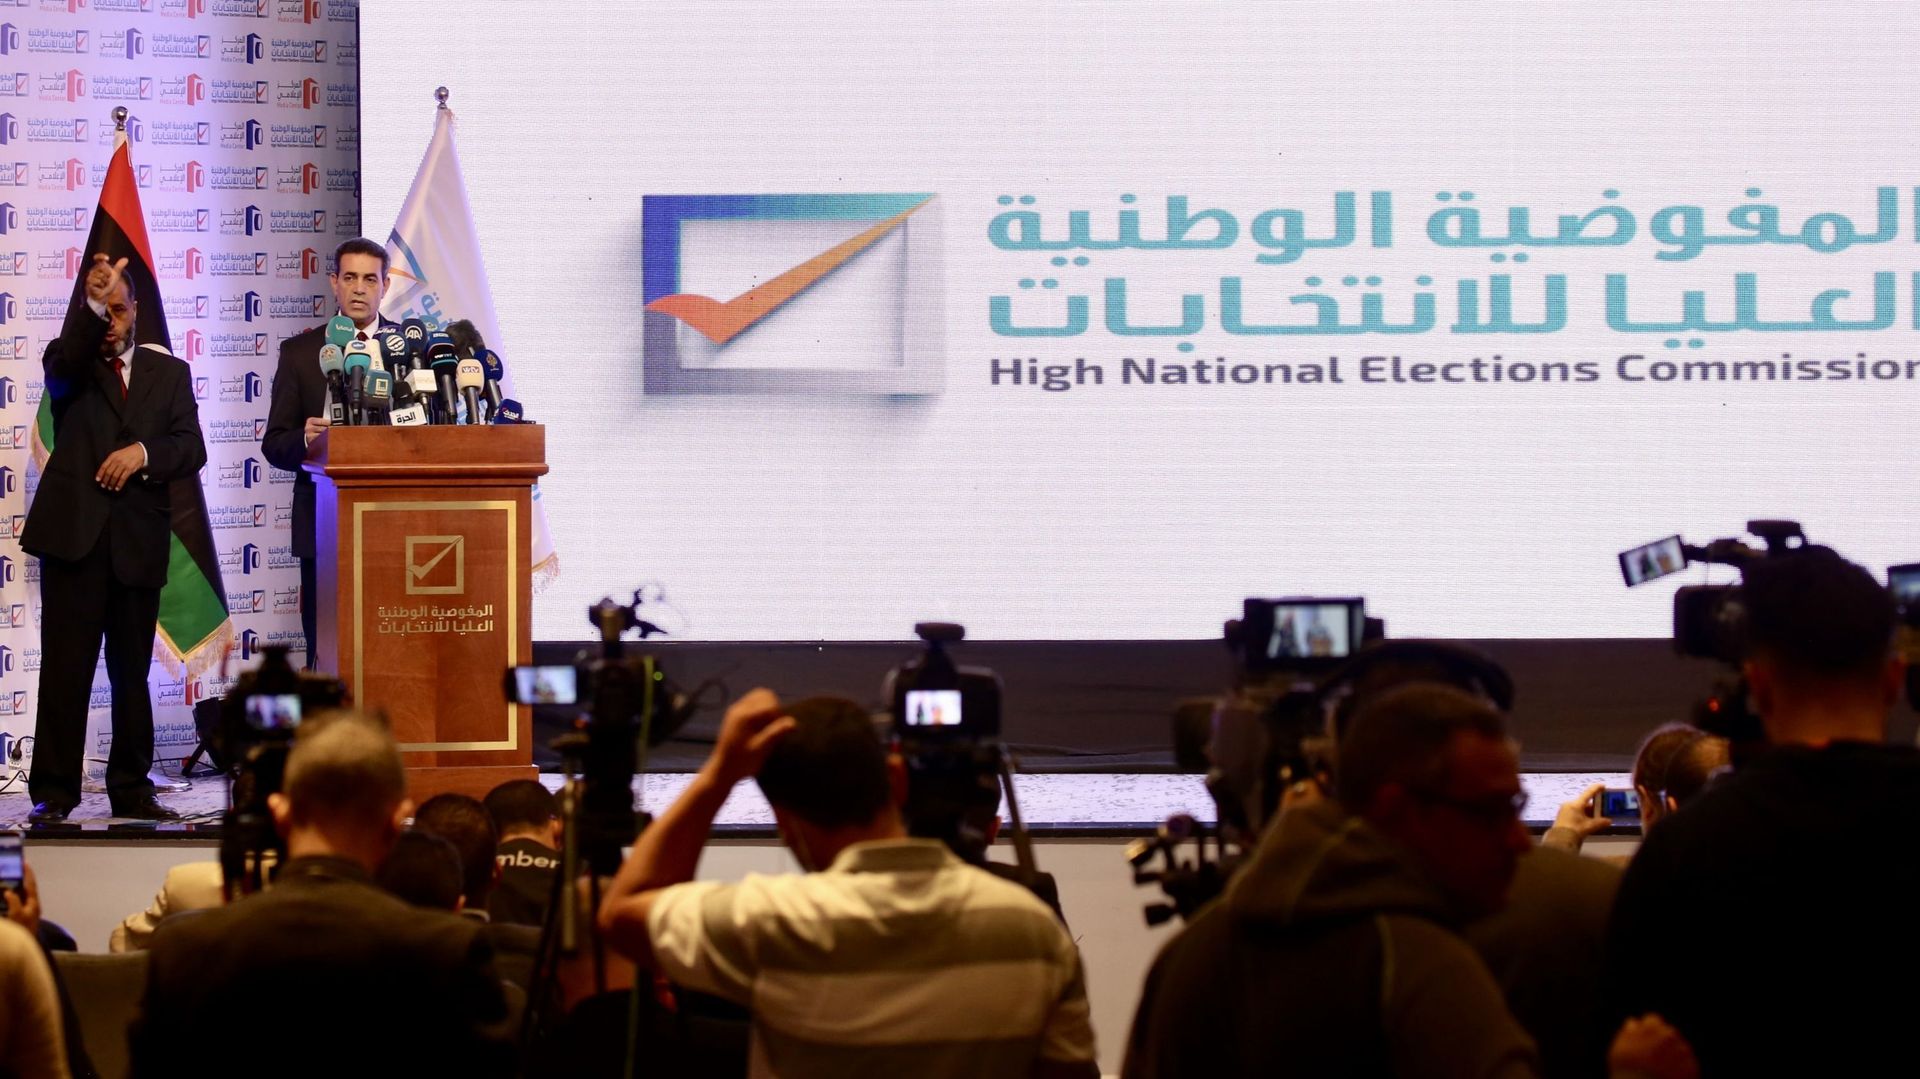 Le président de la Haute Commission électorale nationale libyenne, Emad al-Sayeh, tient une conférence de presse avant les élections présidentielles en Libye, le 23 novembre 2021 à Tripoli, en Libye.